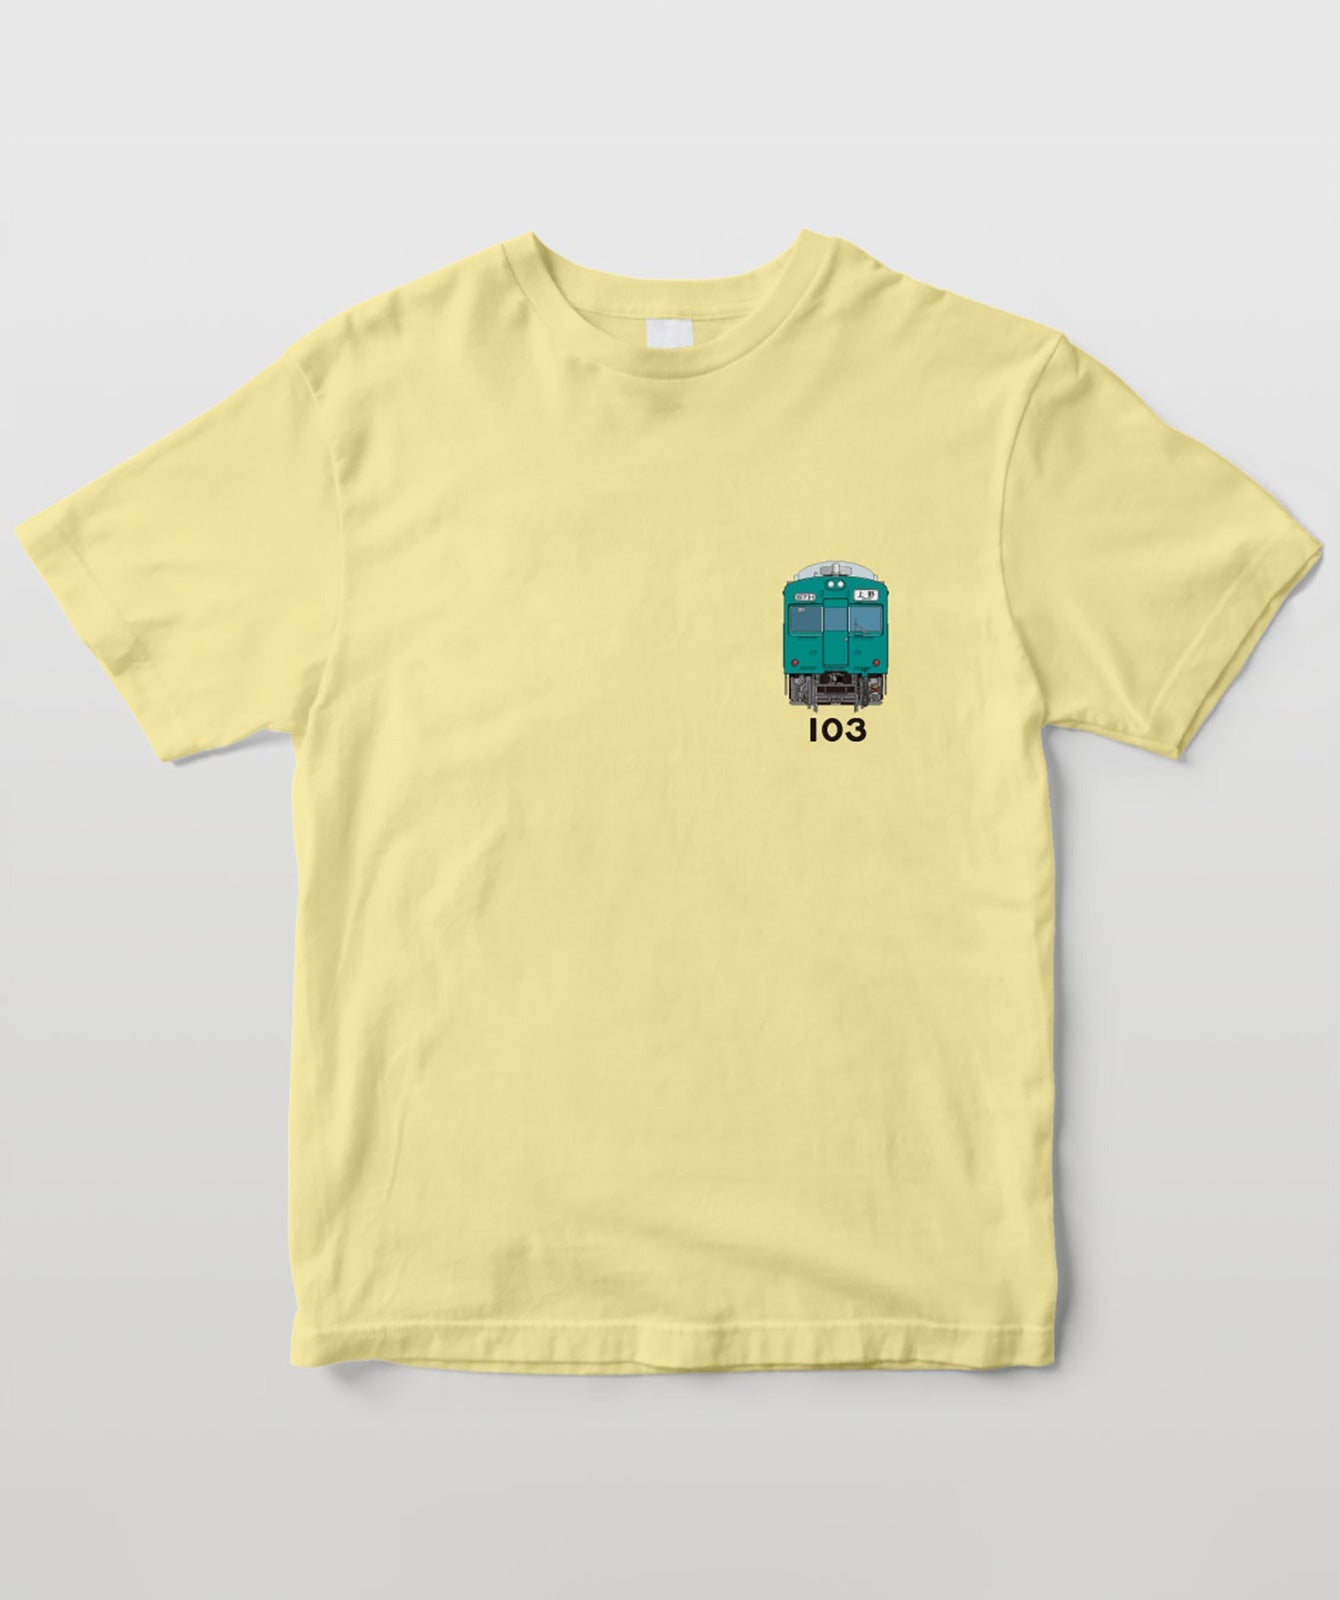 電車の顔図鑑Tシャツ 国鉄型103系電車エメラルドグリーン色 TypeB